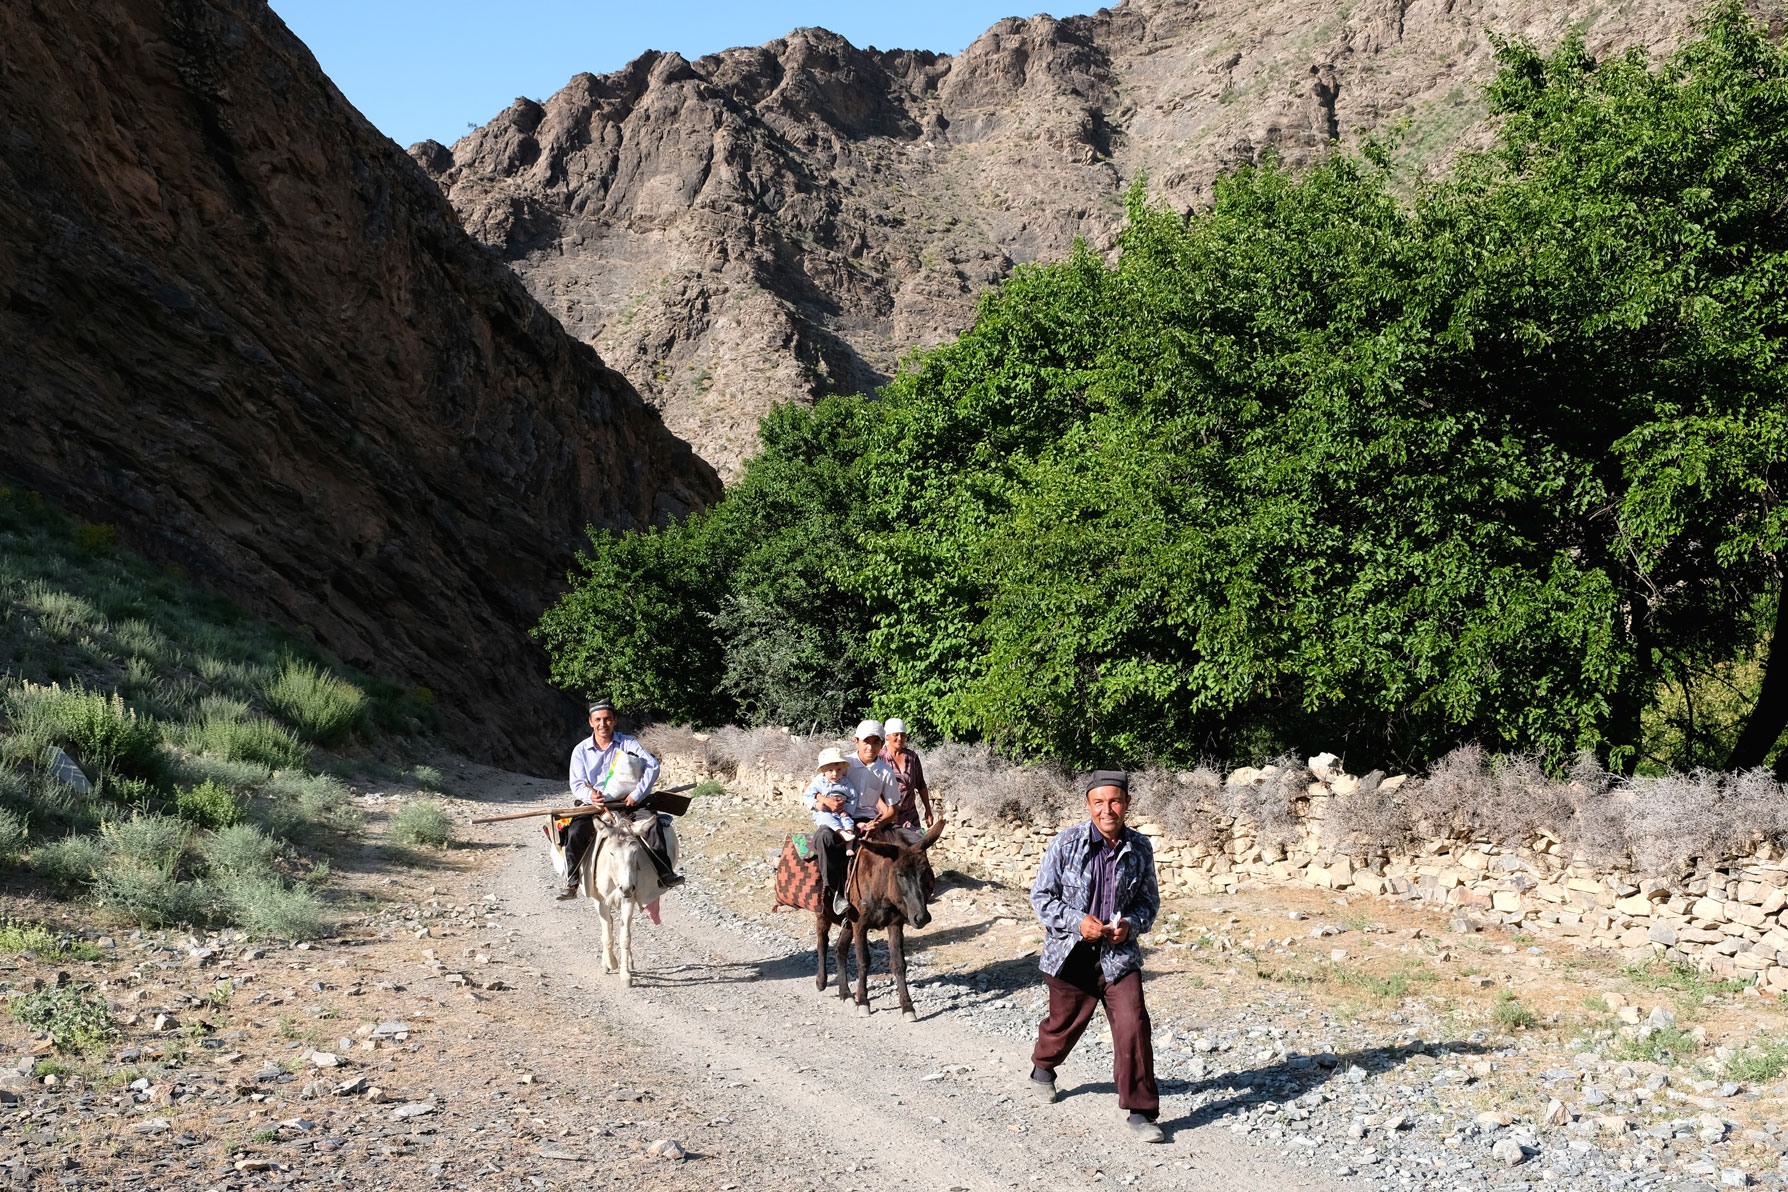 Männer auf Eseln auf einer Schotterstraße im Gebirge